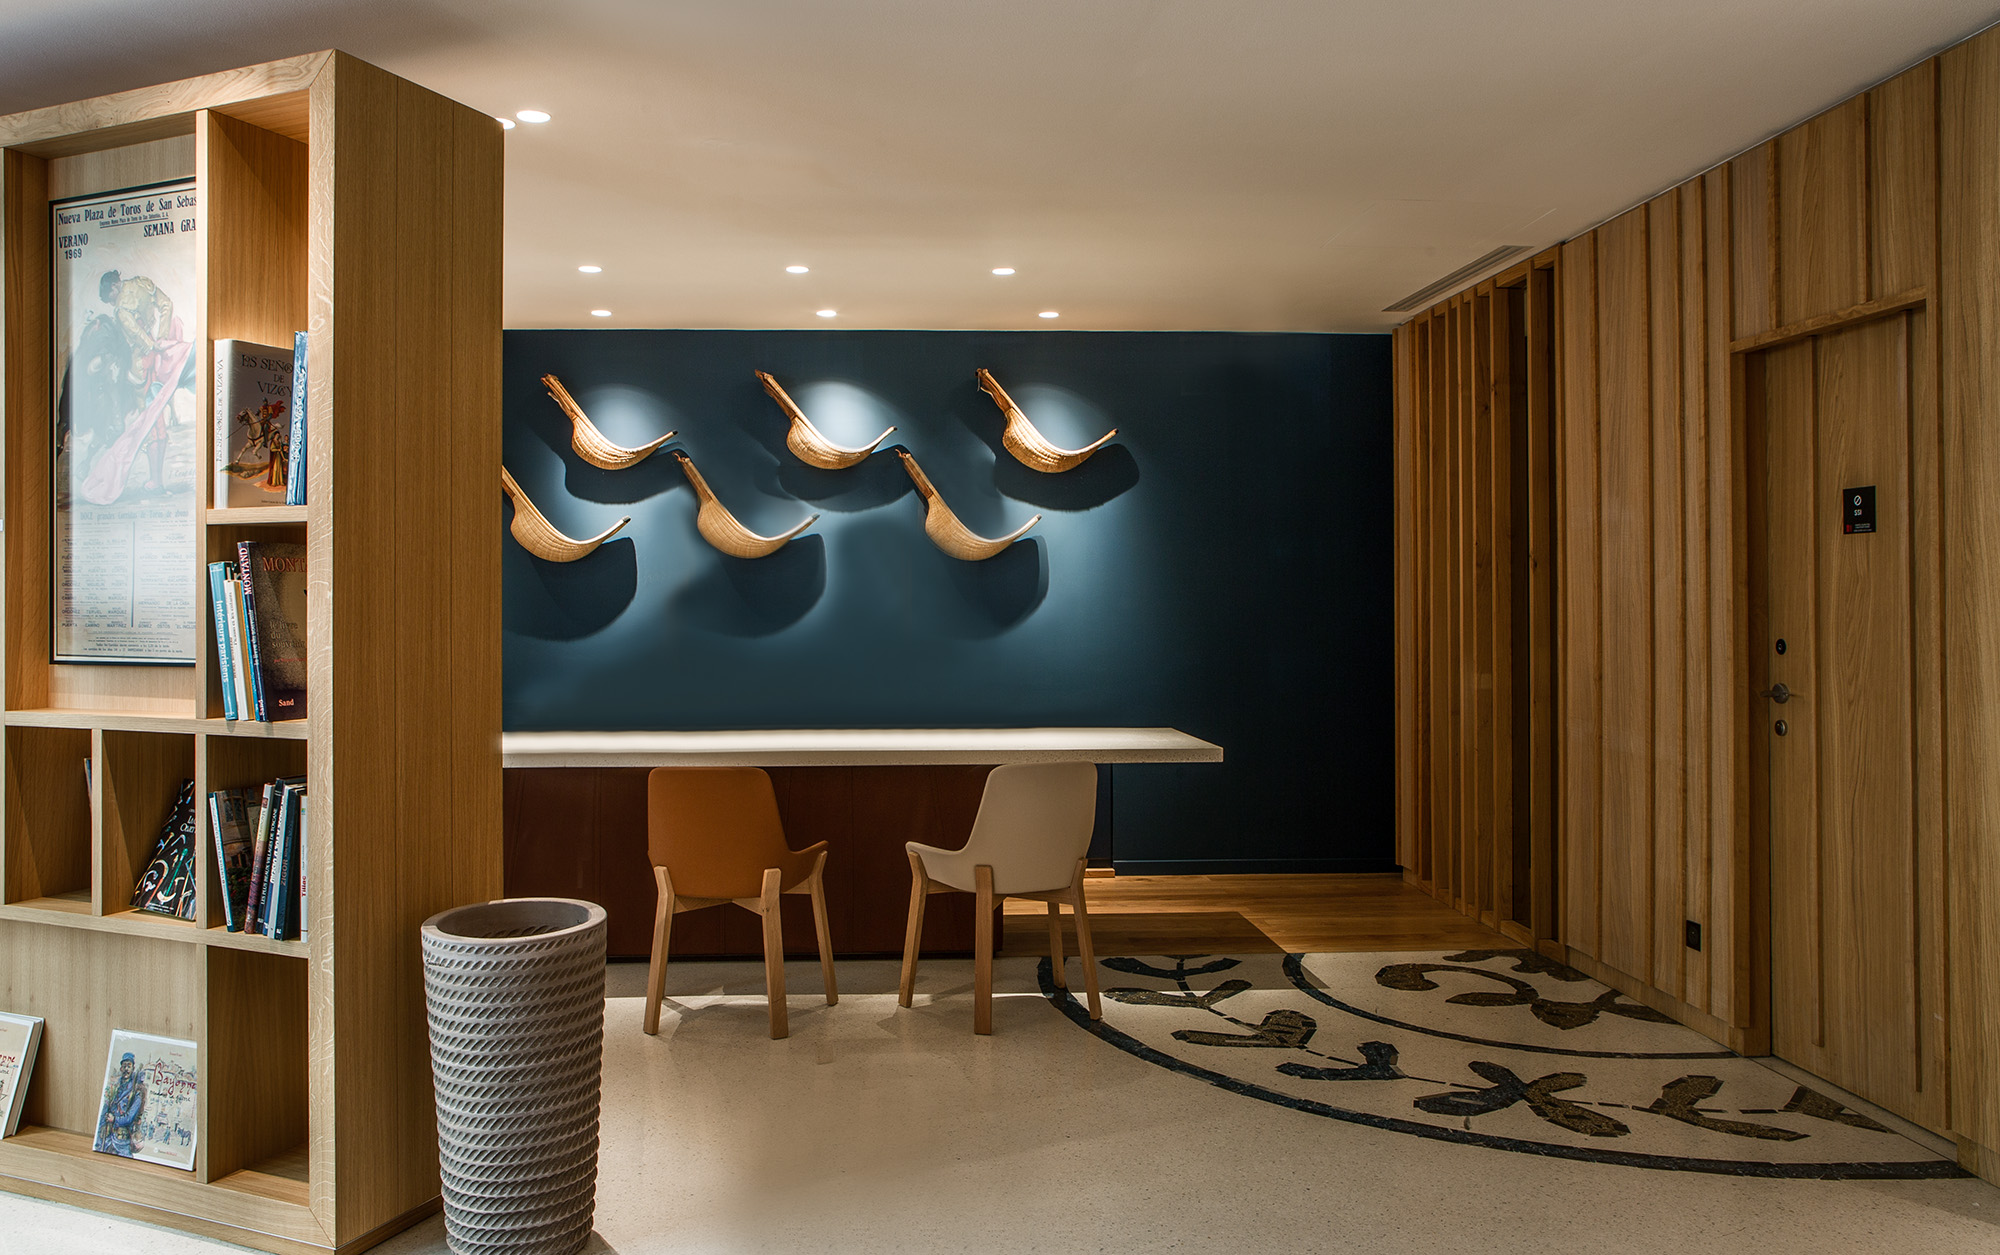 Hôtel Villa Koegui Bayonne, hôtel lifestyle 4 étoiles designé par le studio d'architecture d'intérieur jean-philippe nuel, pays basque, accueil, mosaïque au sol, objet traditionnel